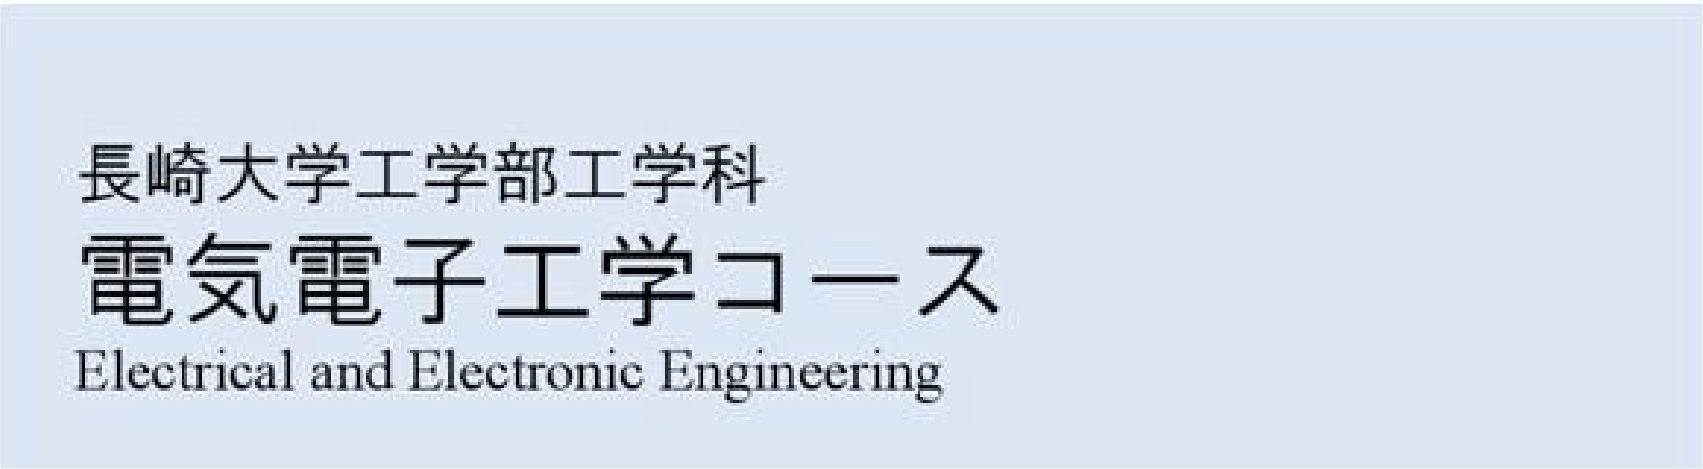 長崎大学工学科 電気電子工学コース